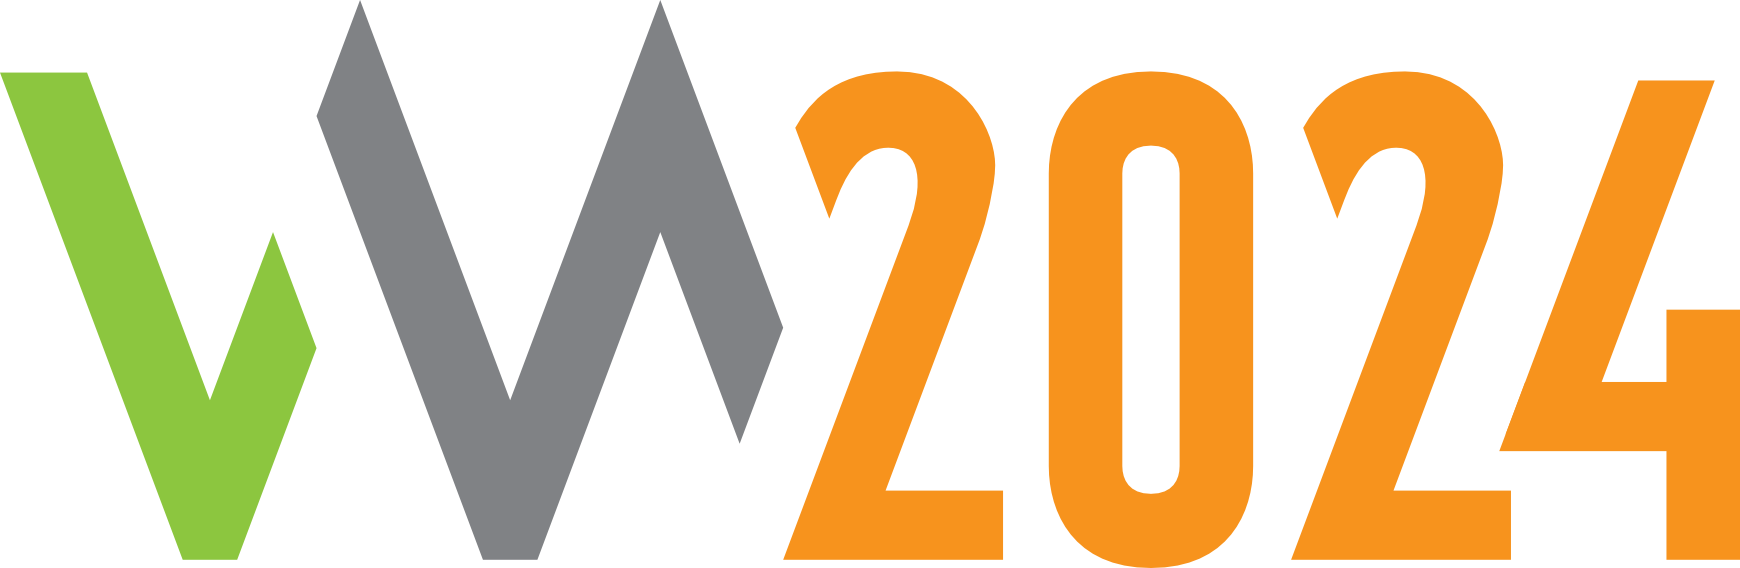 VM2024